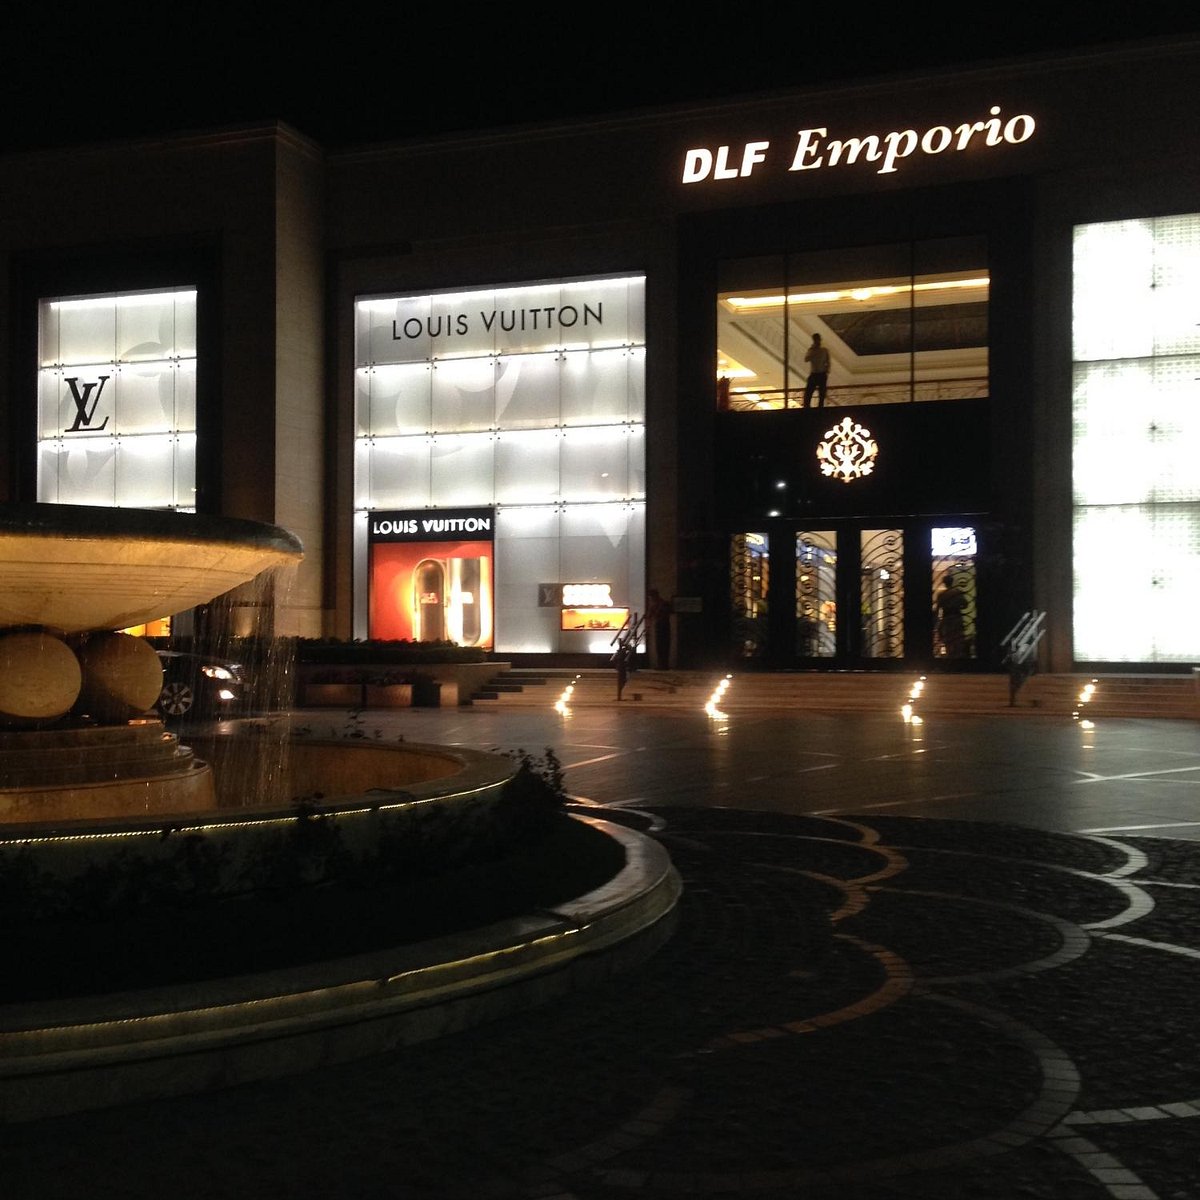 DLF Emporio Mall in Vasant Kunj,Delhi - Best Malls in Delhi - Justdial